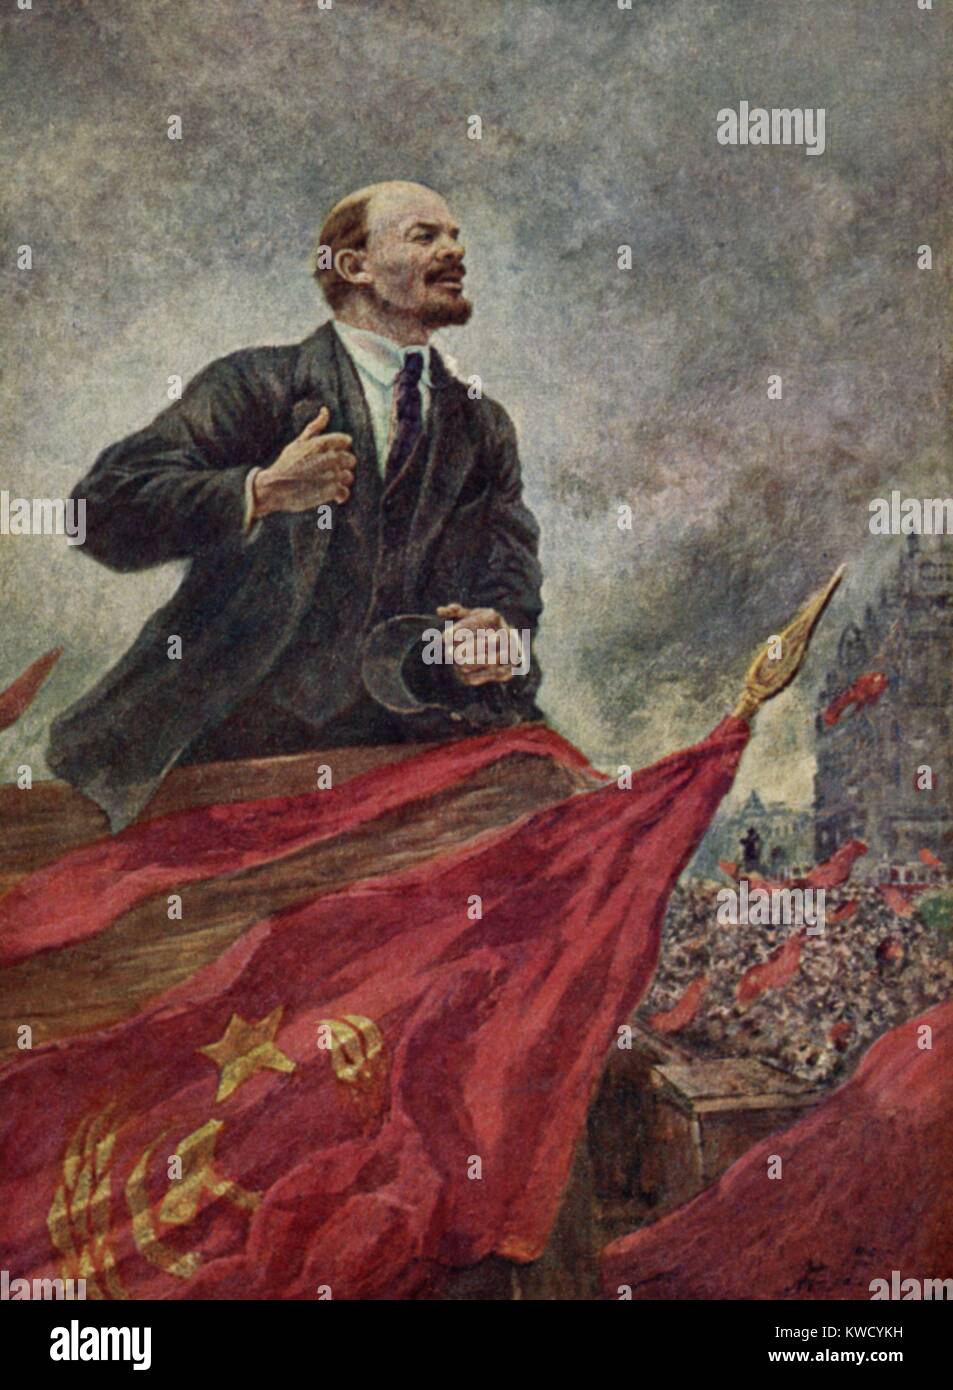 LENIN sul supporto, da Alexander Gerassimov, c. 1925-1940. Pittura Social-Realist di Lenin parlando. Gerassimov è stato tra i più eminenti e politicamente pittori collegato a metà secolo la Russia sovietica (BSLOC 2017 2 20) Foto Stock